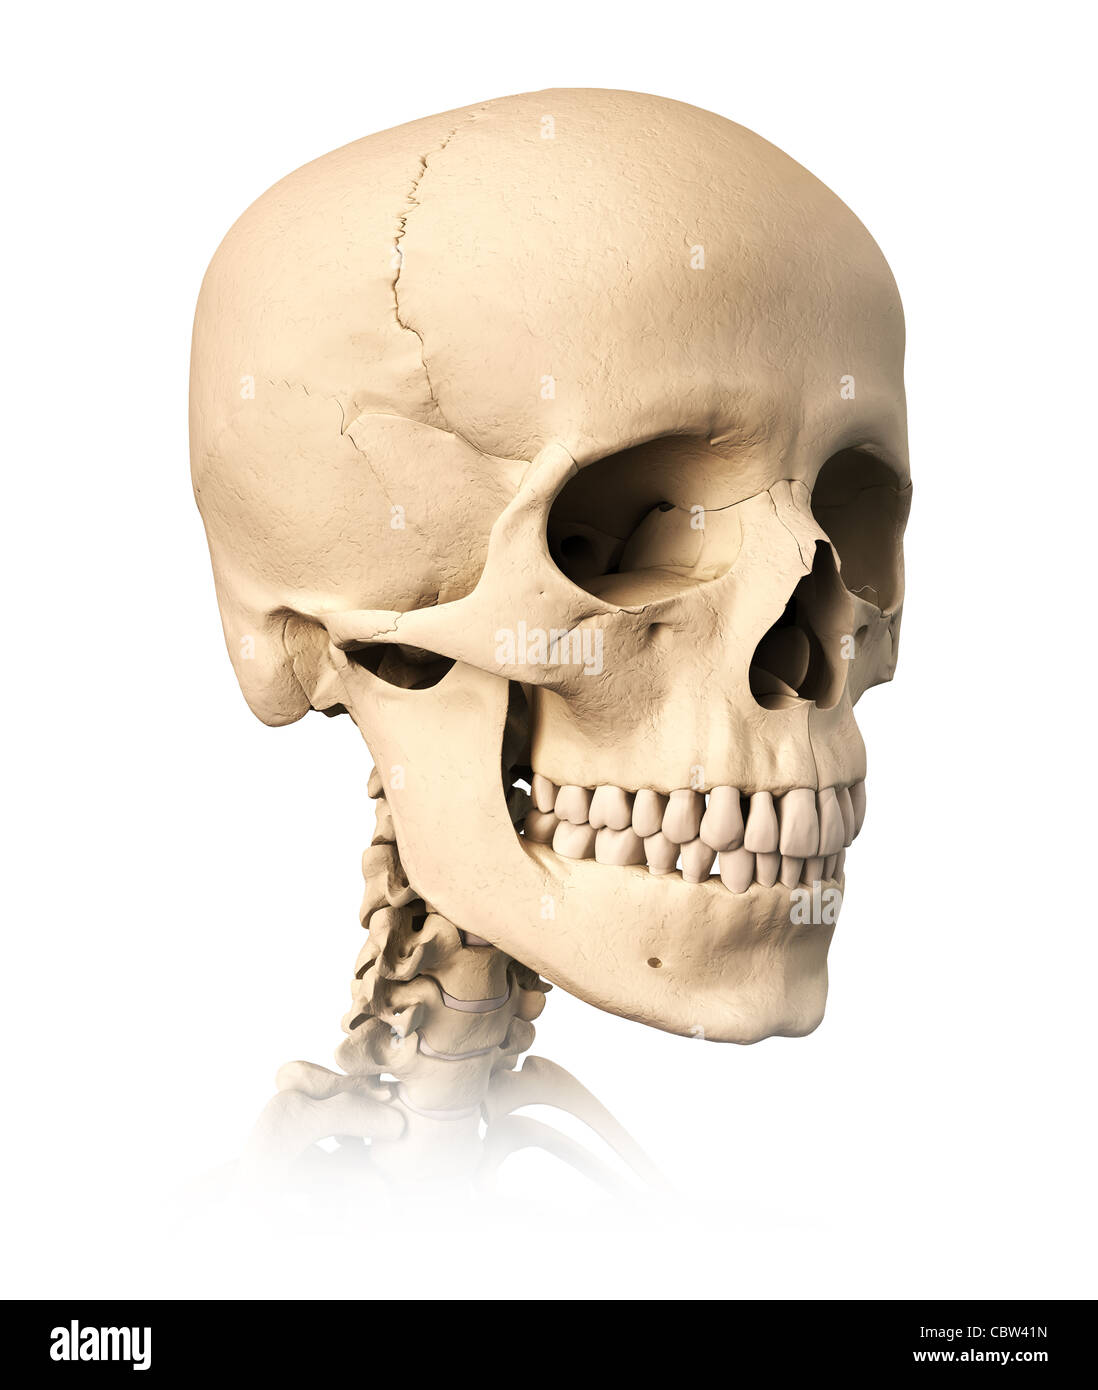 Très détaillé et scientifiquement correctes crâne humain, sur fond blanc. Anatomie de l'image. Banque D'Images